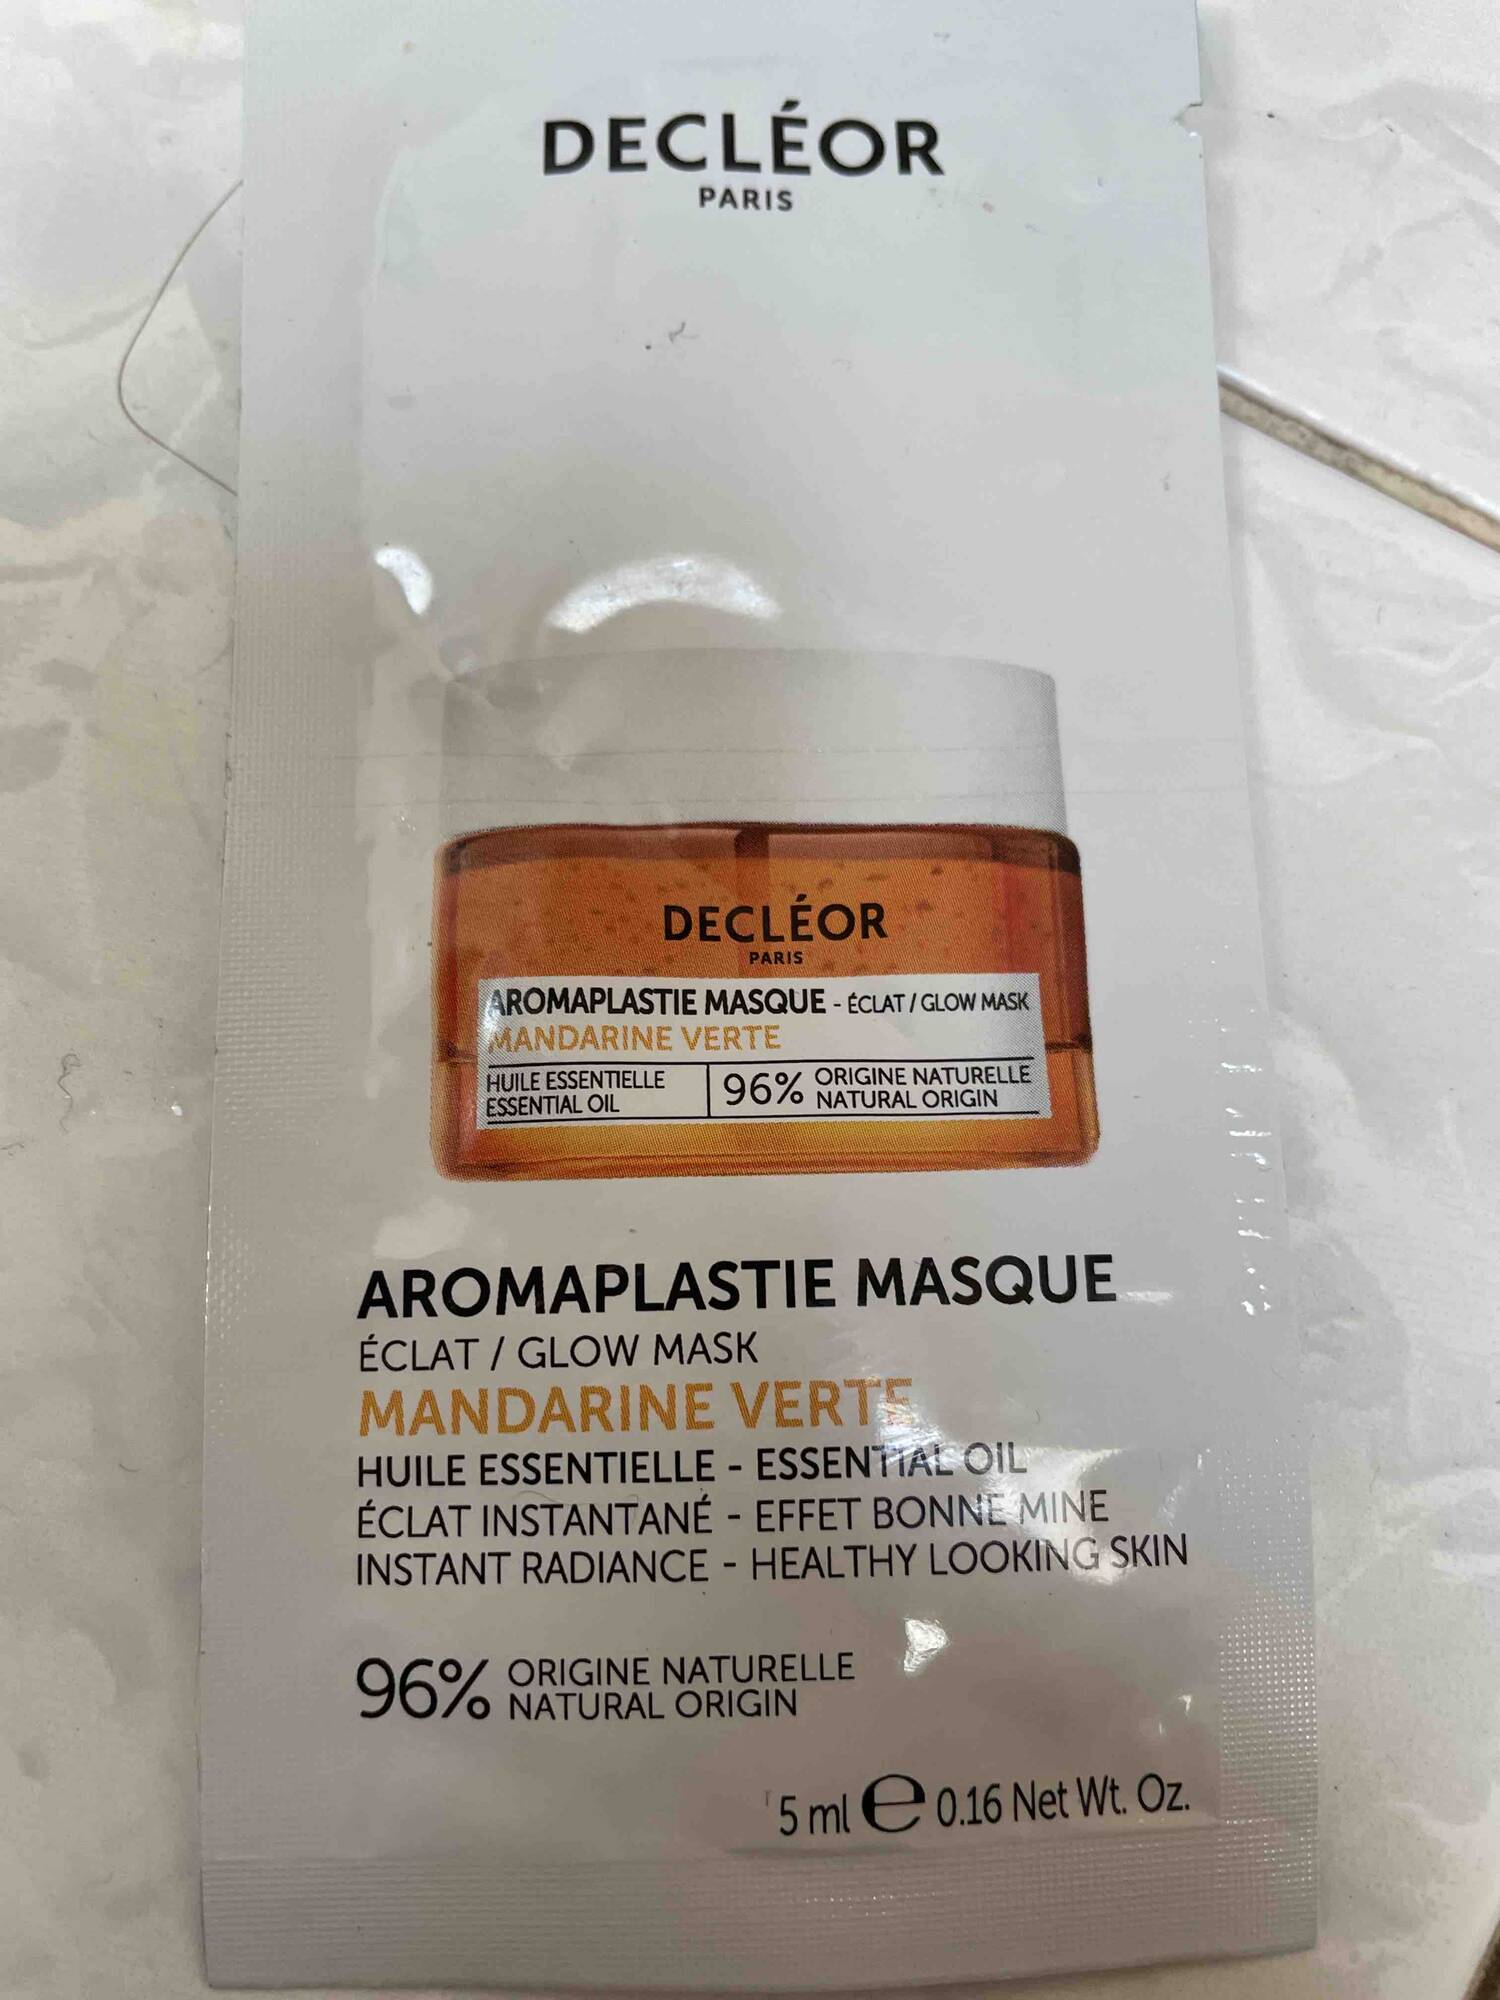 DECLÉOR - Aromaplastie masque mandarine verte